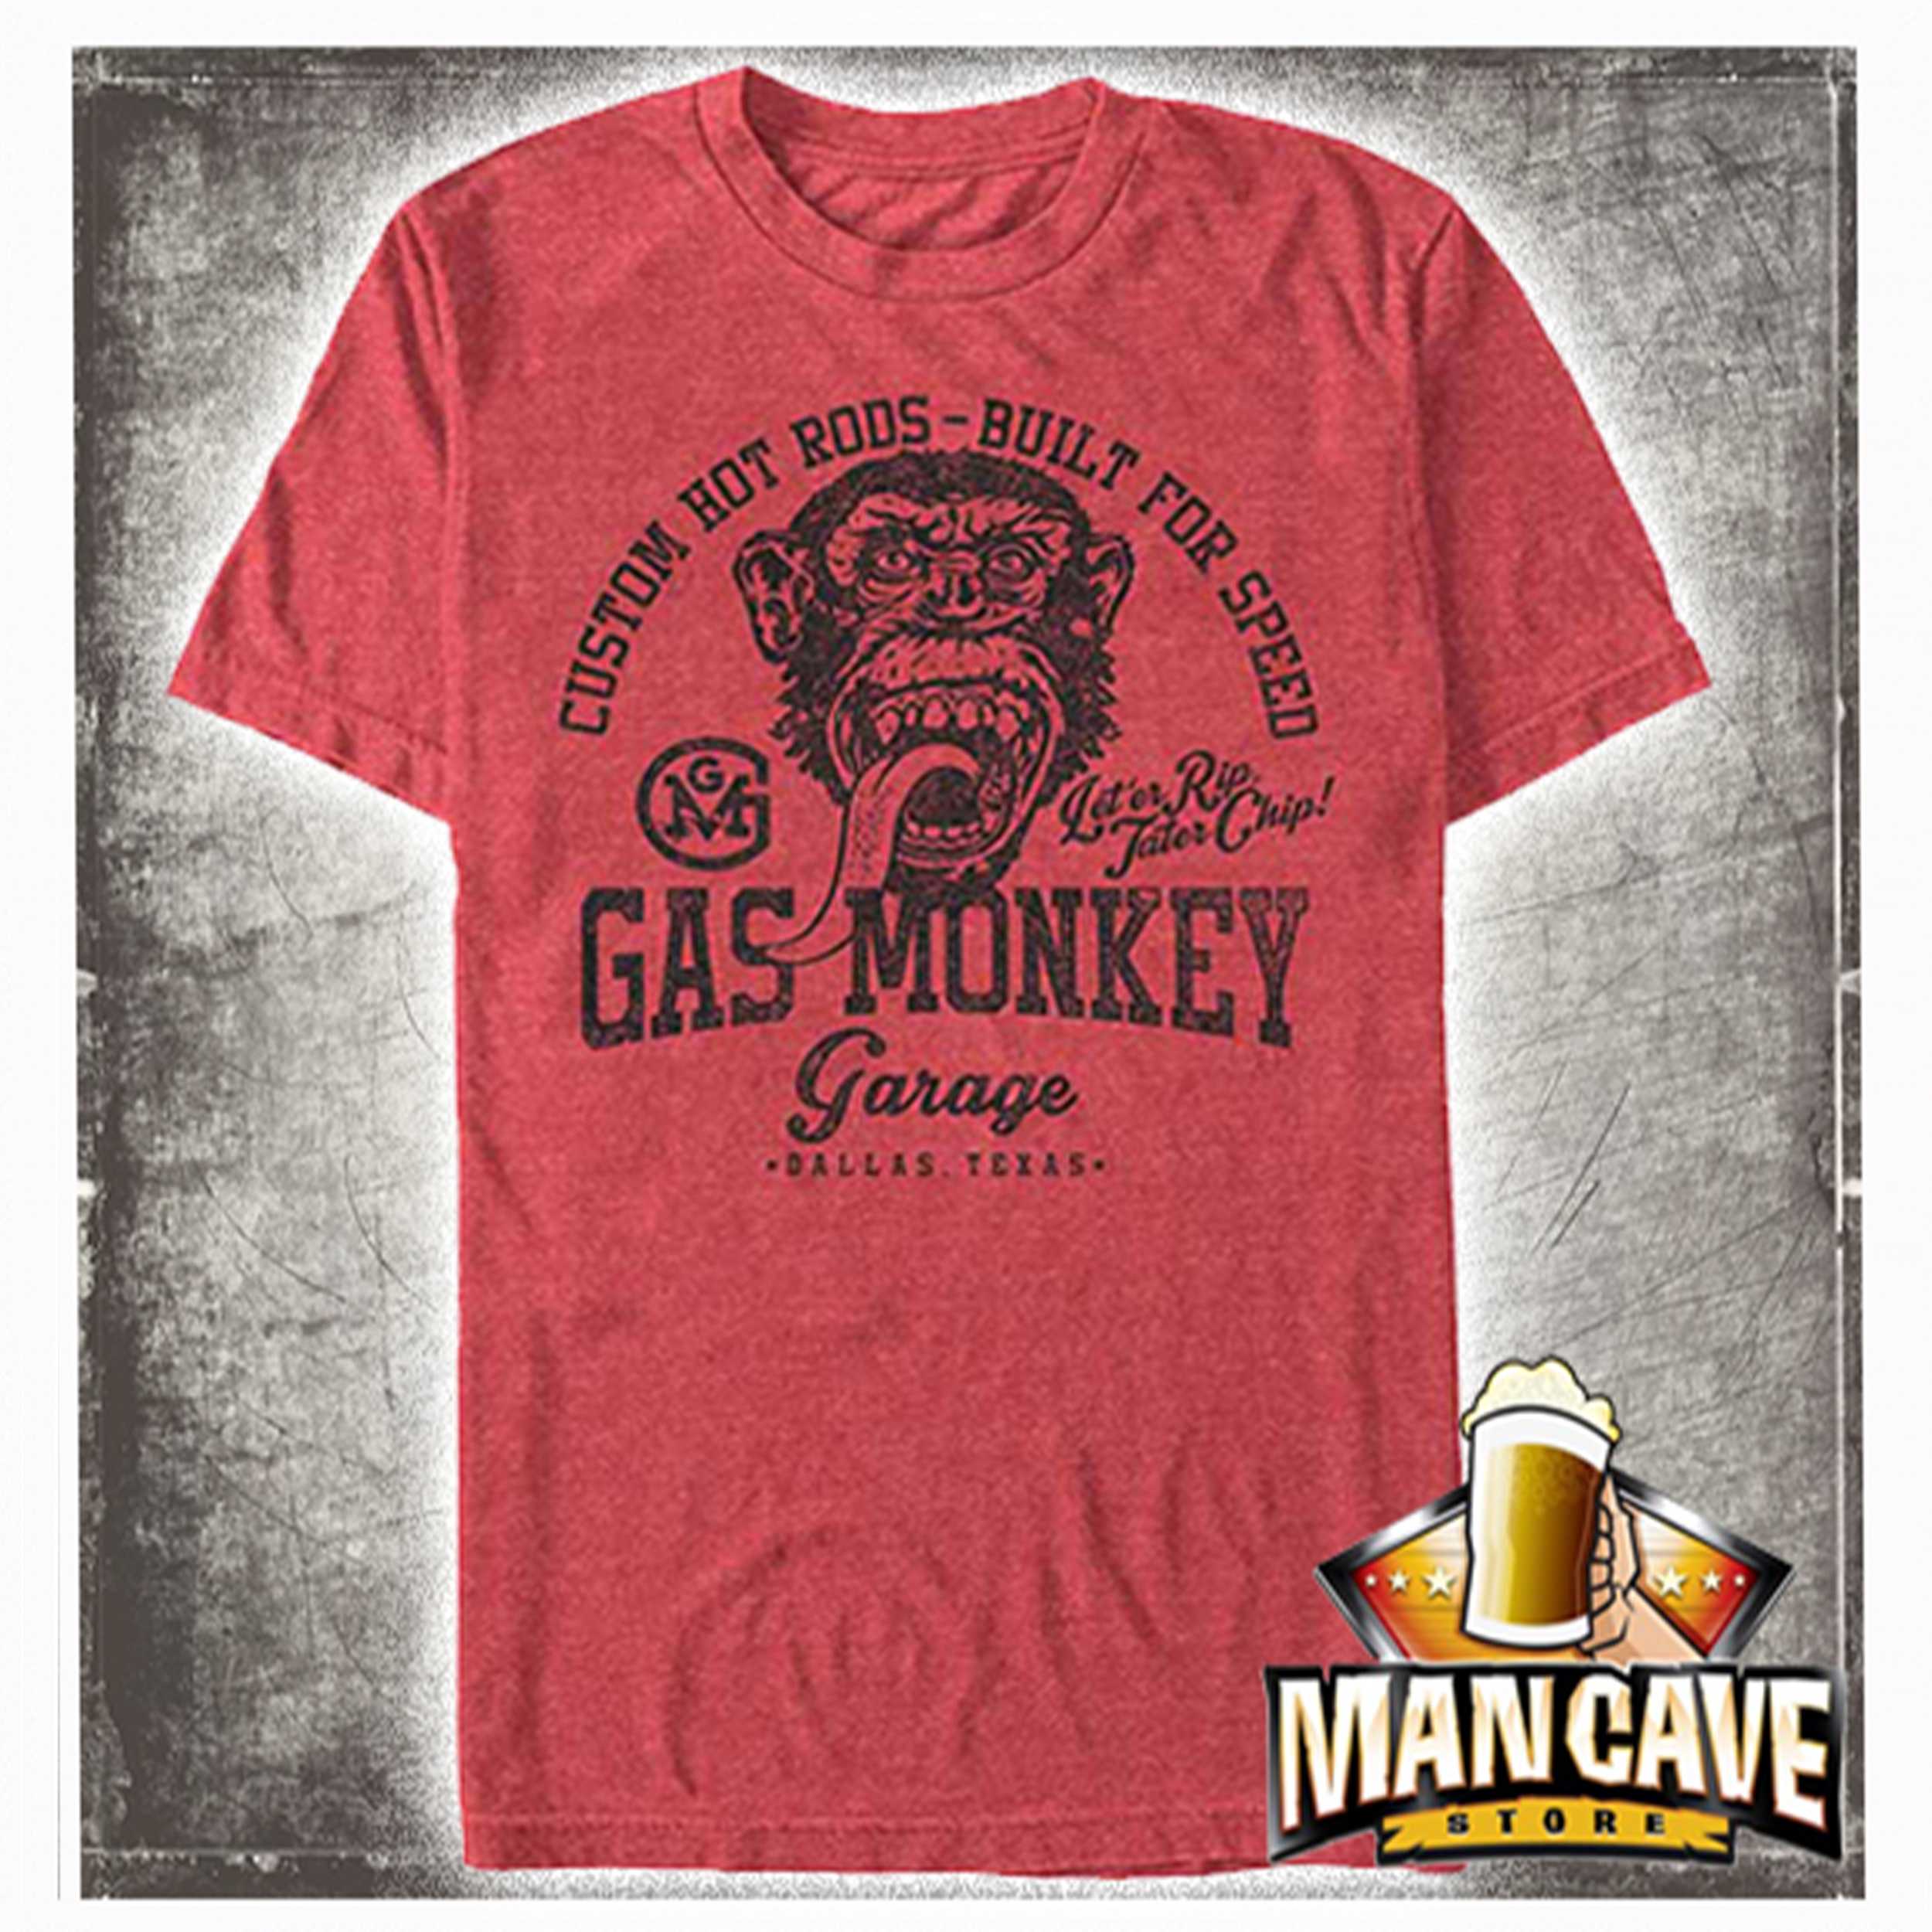 Prestige Gewend aan breedte Gas Monkey Garage on Red Heather T-shirt - Mymancave Store